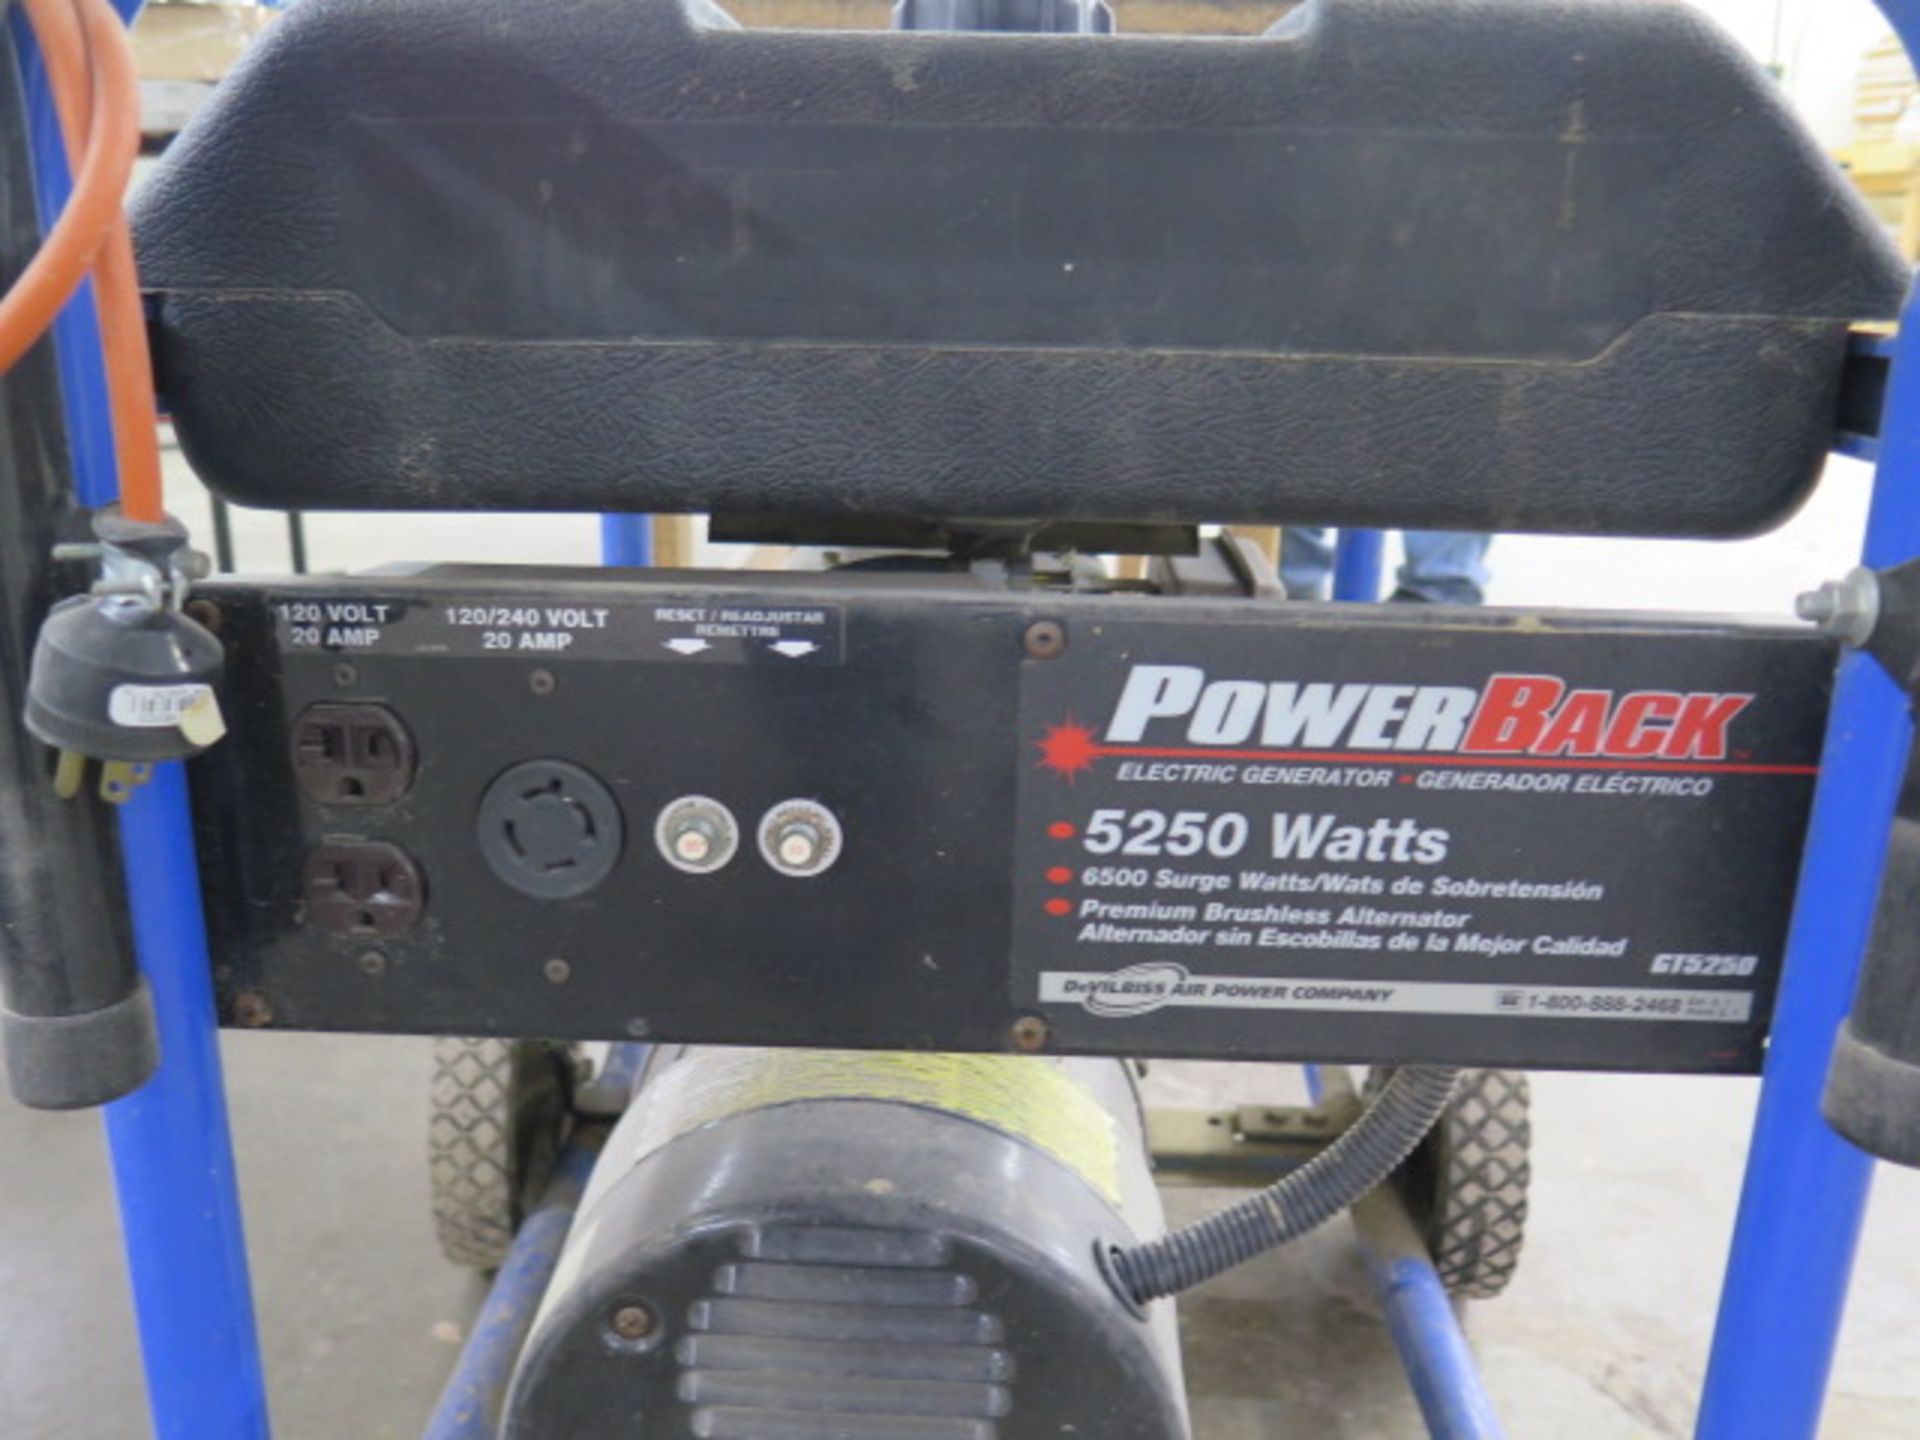 DeVilbiss "Power Back" 5250 Watt Gas Generator (SOLD AS-IS - NO WARRANTY) - Image 5 of 6